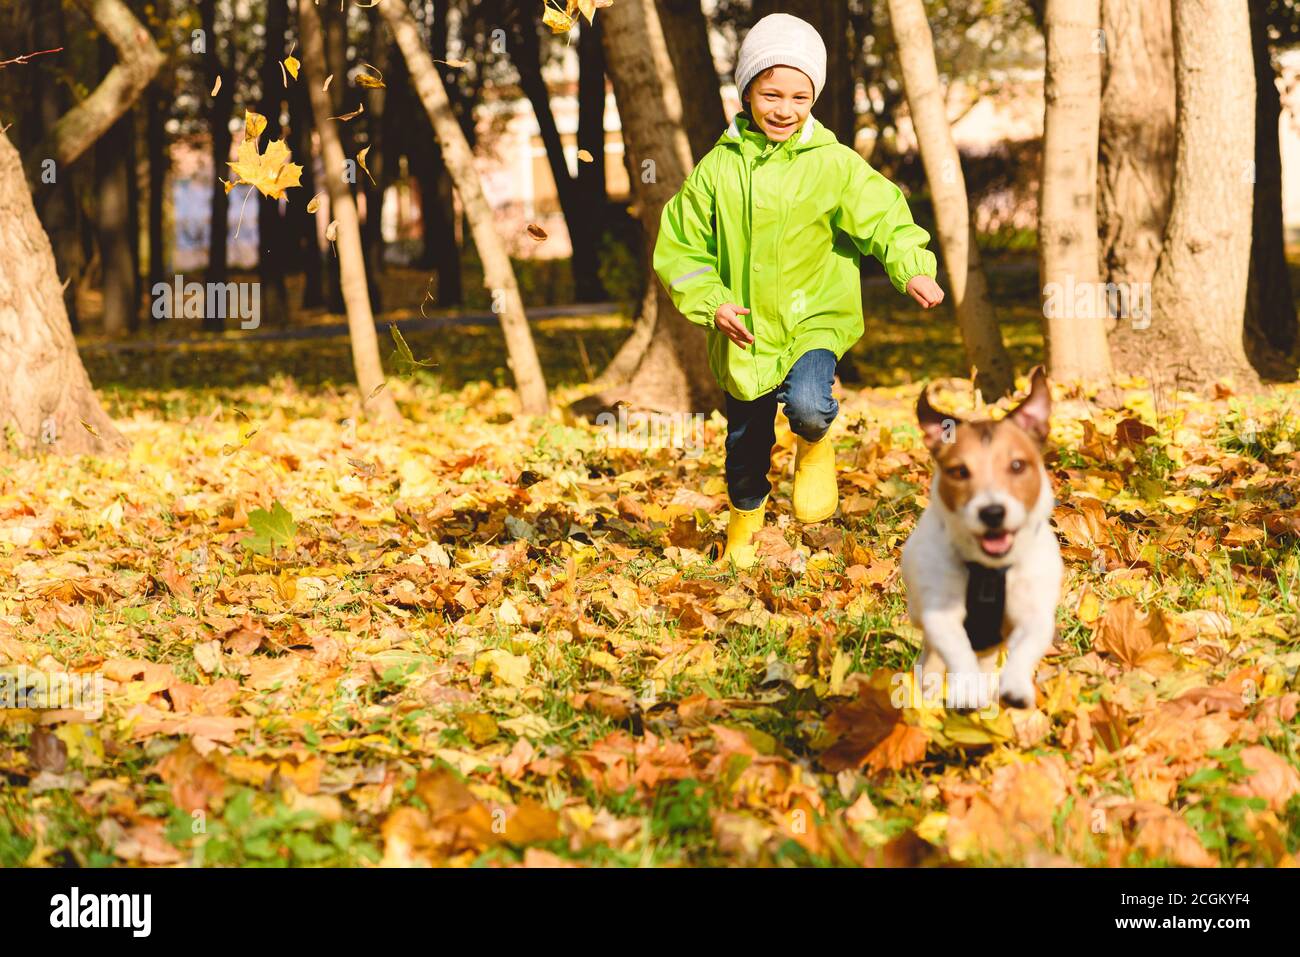 Herbst Outdoor-Aktivitätskonzept mit kleinen glücklichen Jungen in grün Regenmantel läuft nach Haustier Hund im Herbst Park am September Tag Stockfoto